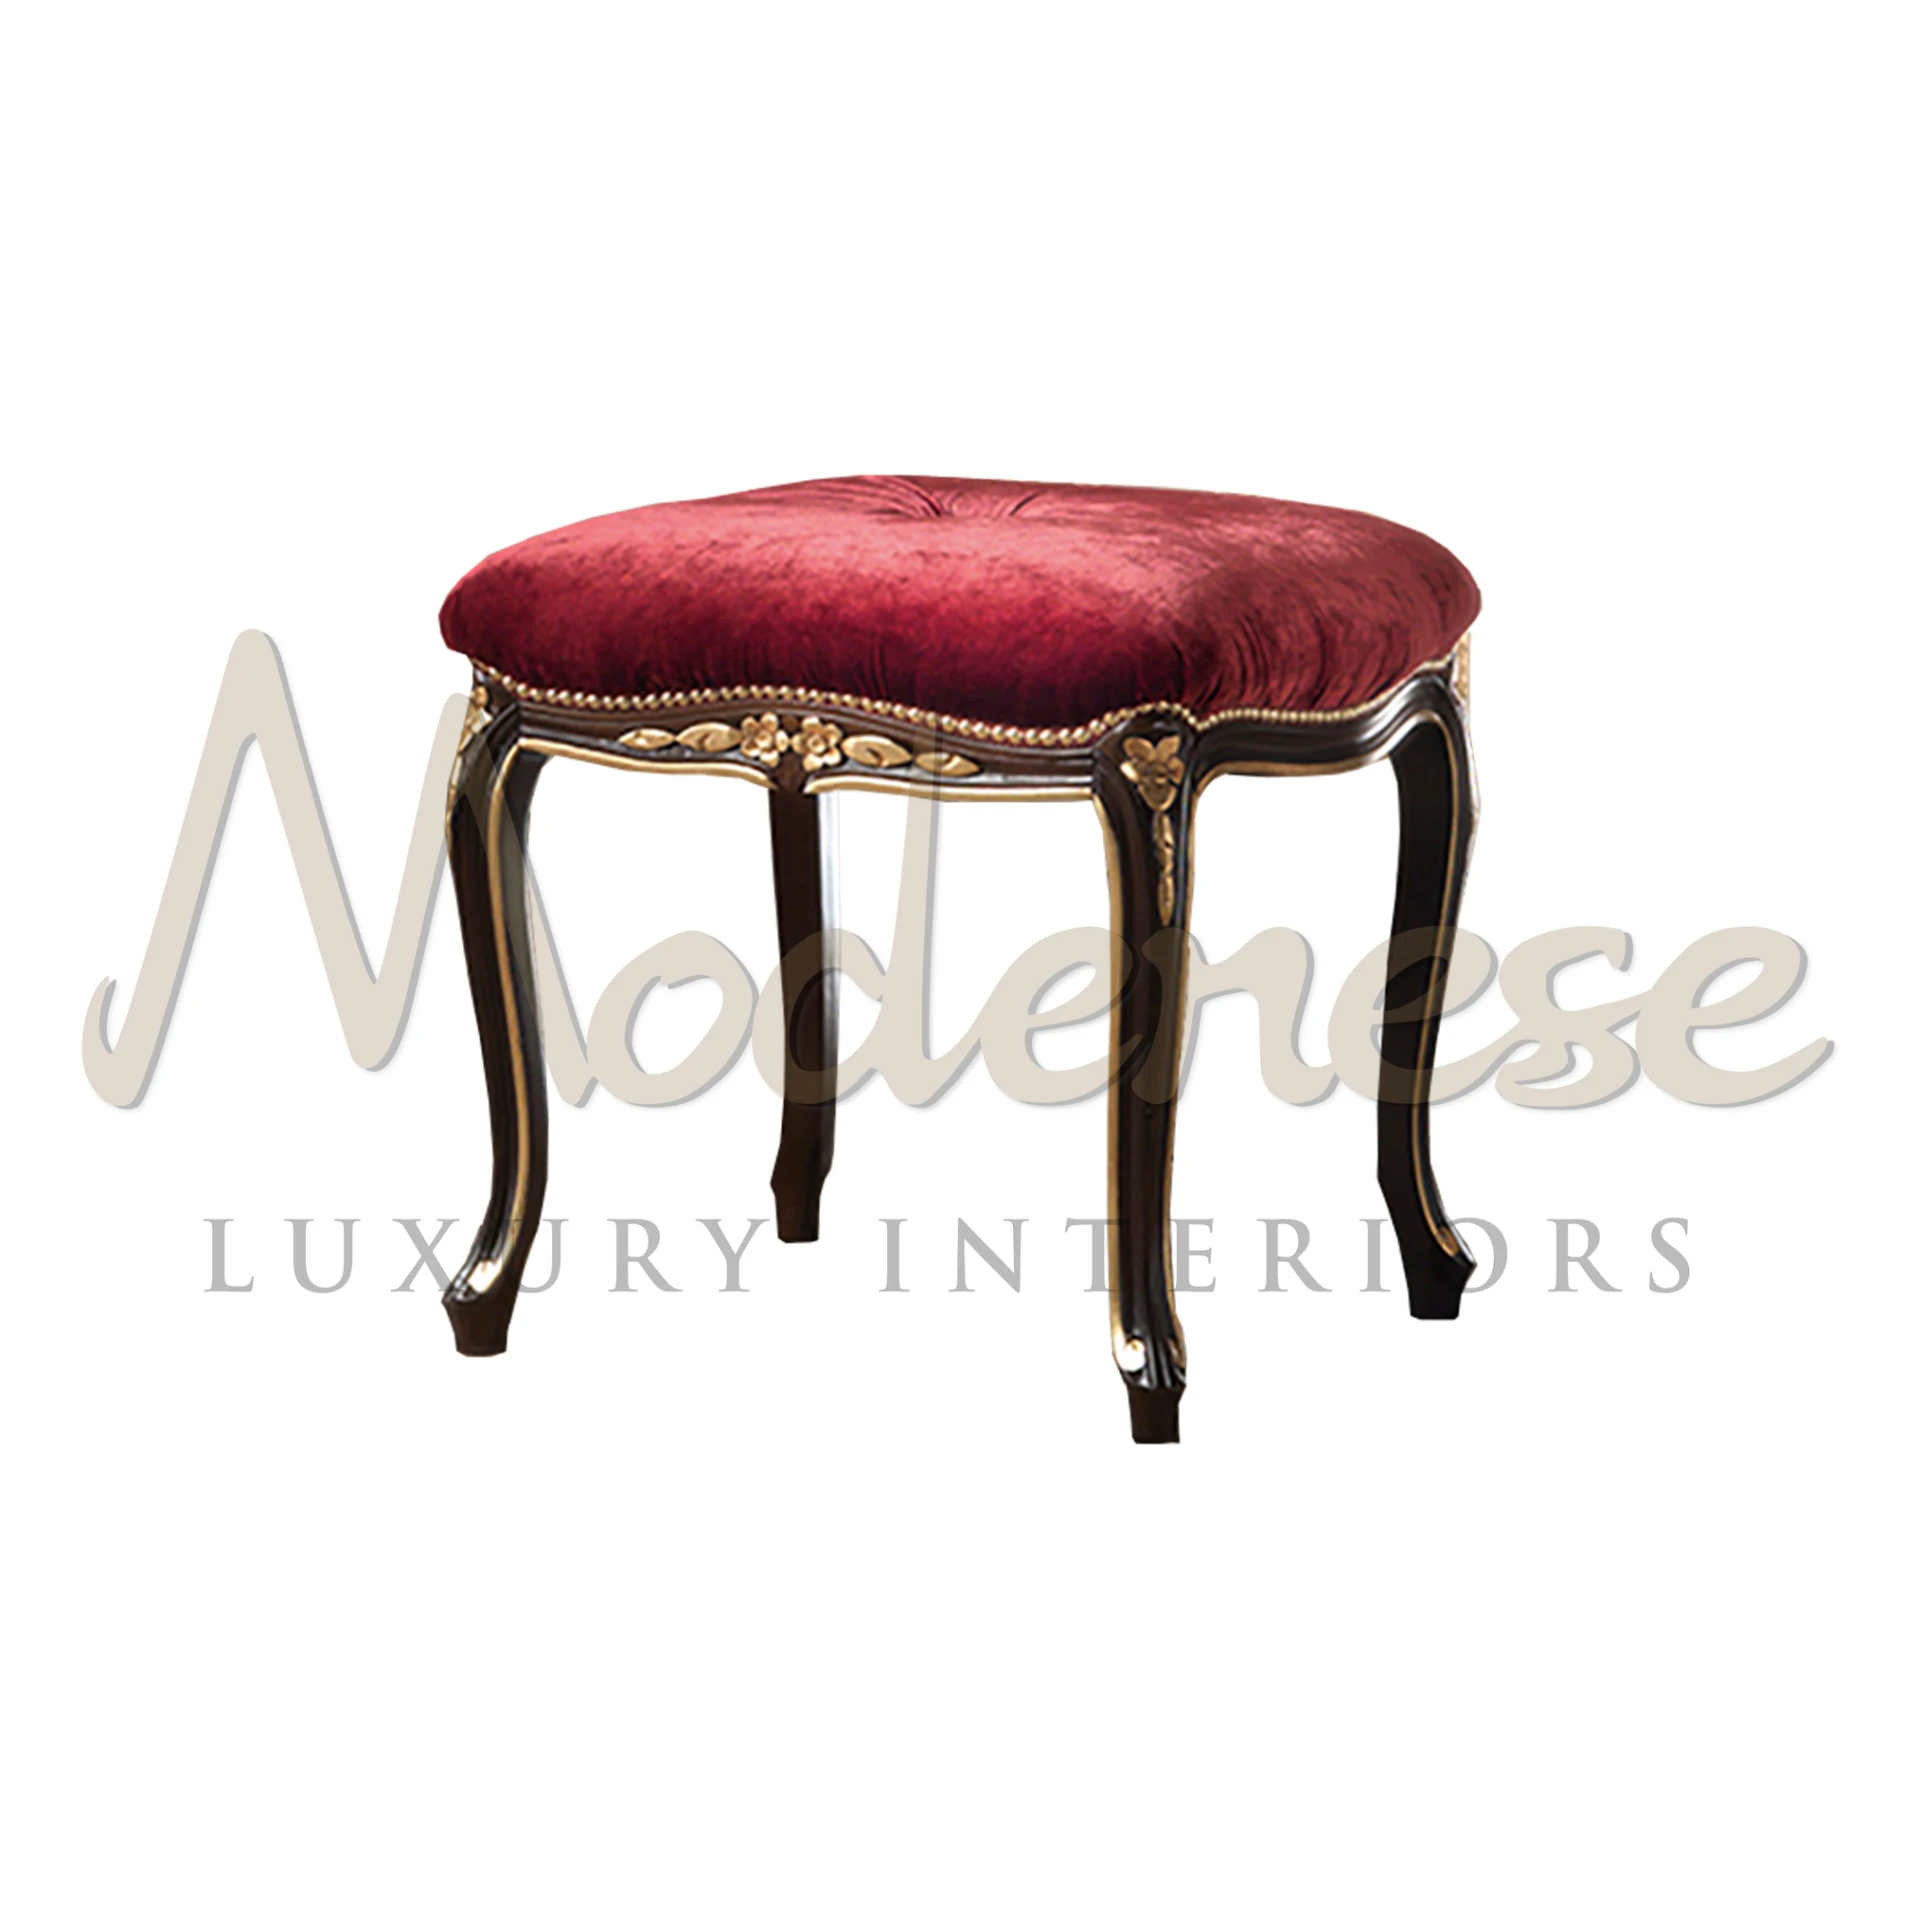 Luxurious Comfort: Classic Red Velvet Luxury Stool for Elegant Living